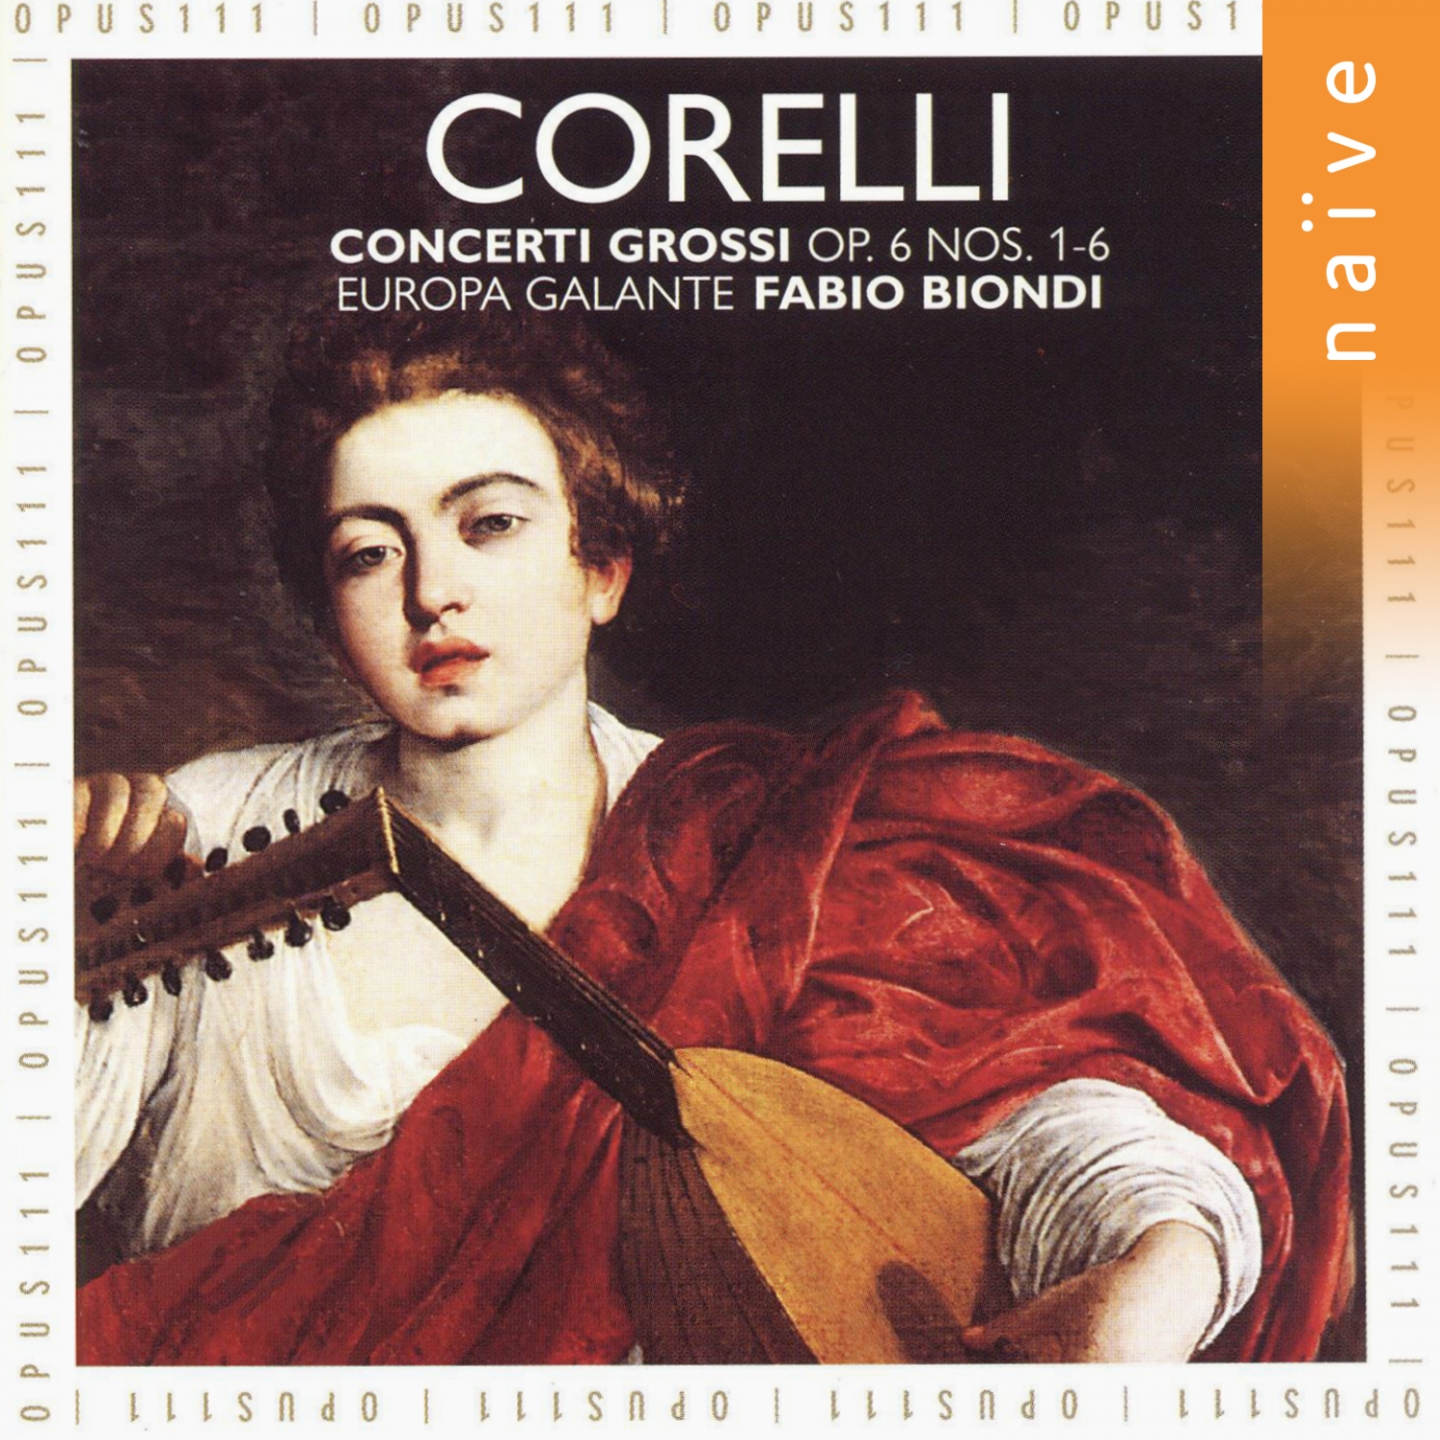 12 Concerti Grossi, Op. 6, No. 4 in D Major: I. Adagio - Allegro